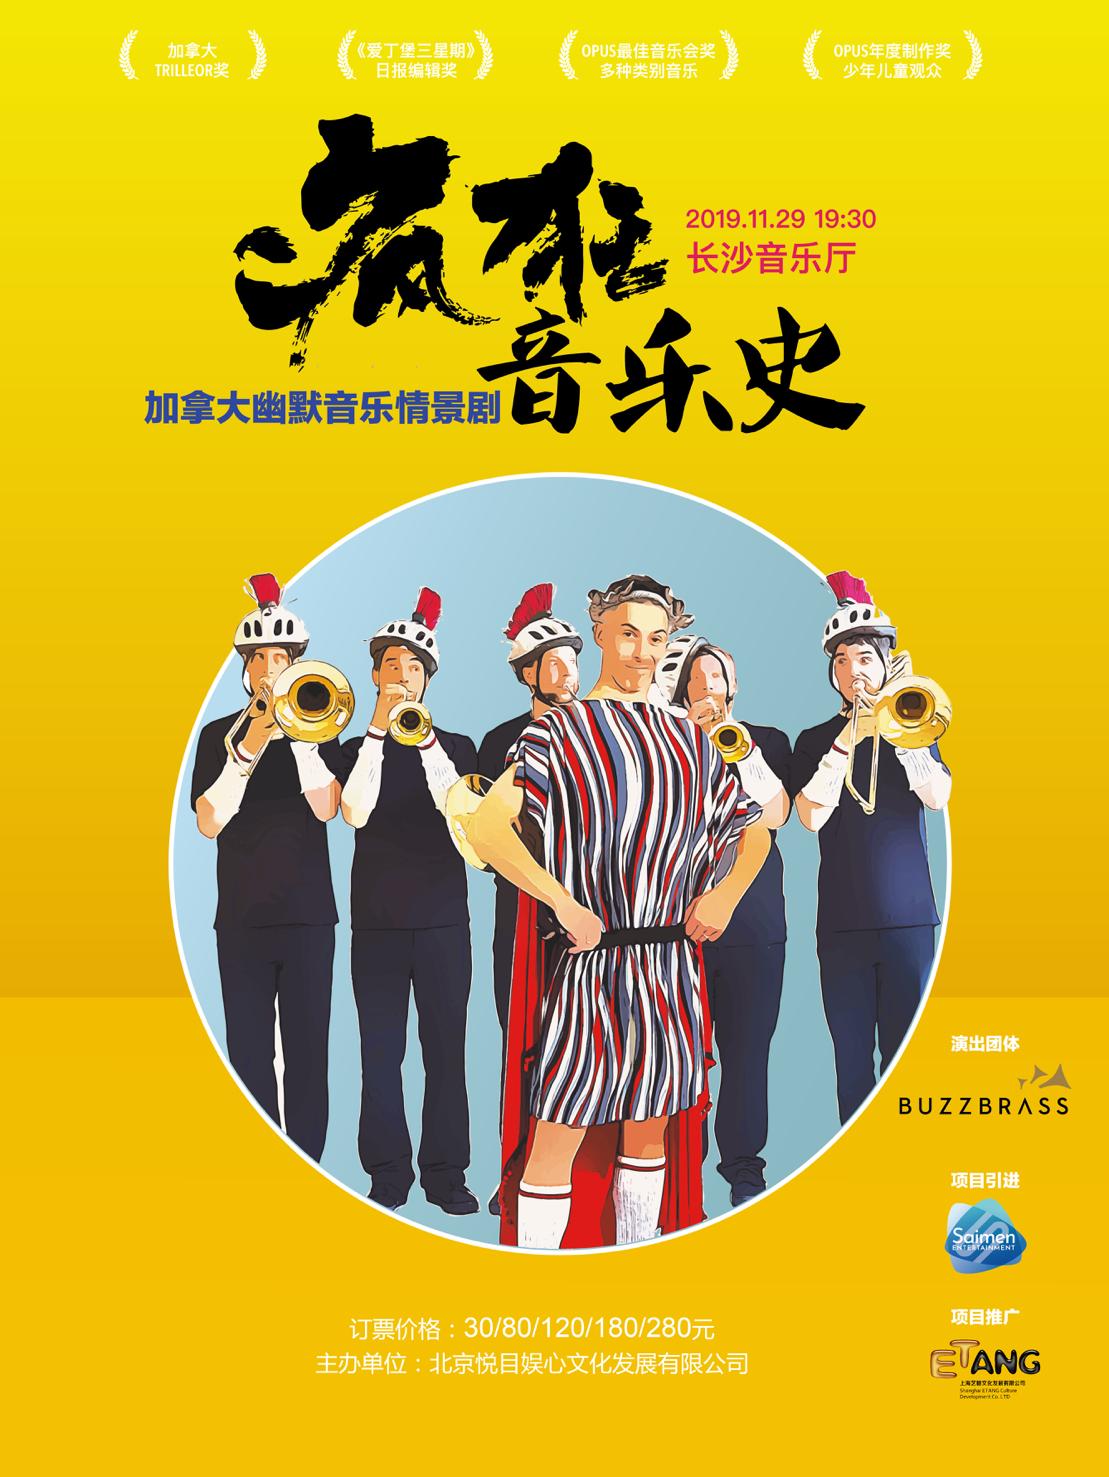 Affiche pour l'événement musical BuzzBrass, mettant en scène une fanfare vibrante, sur un fond jaune audacieux avec de la calligraphie chinoise.